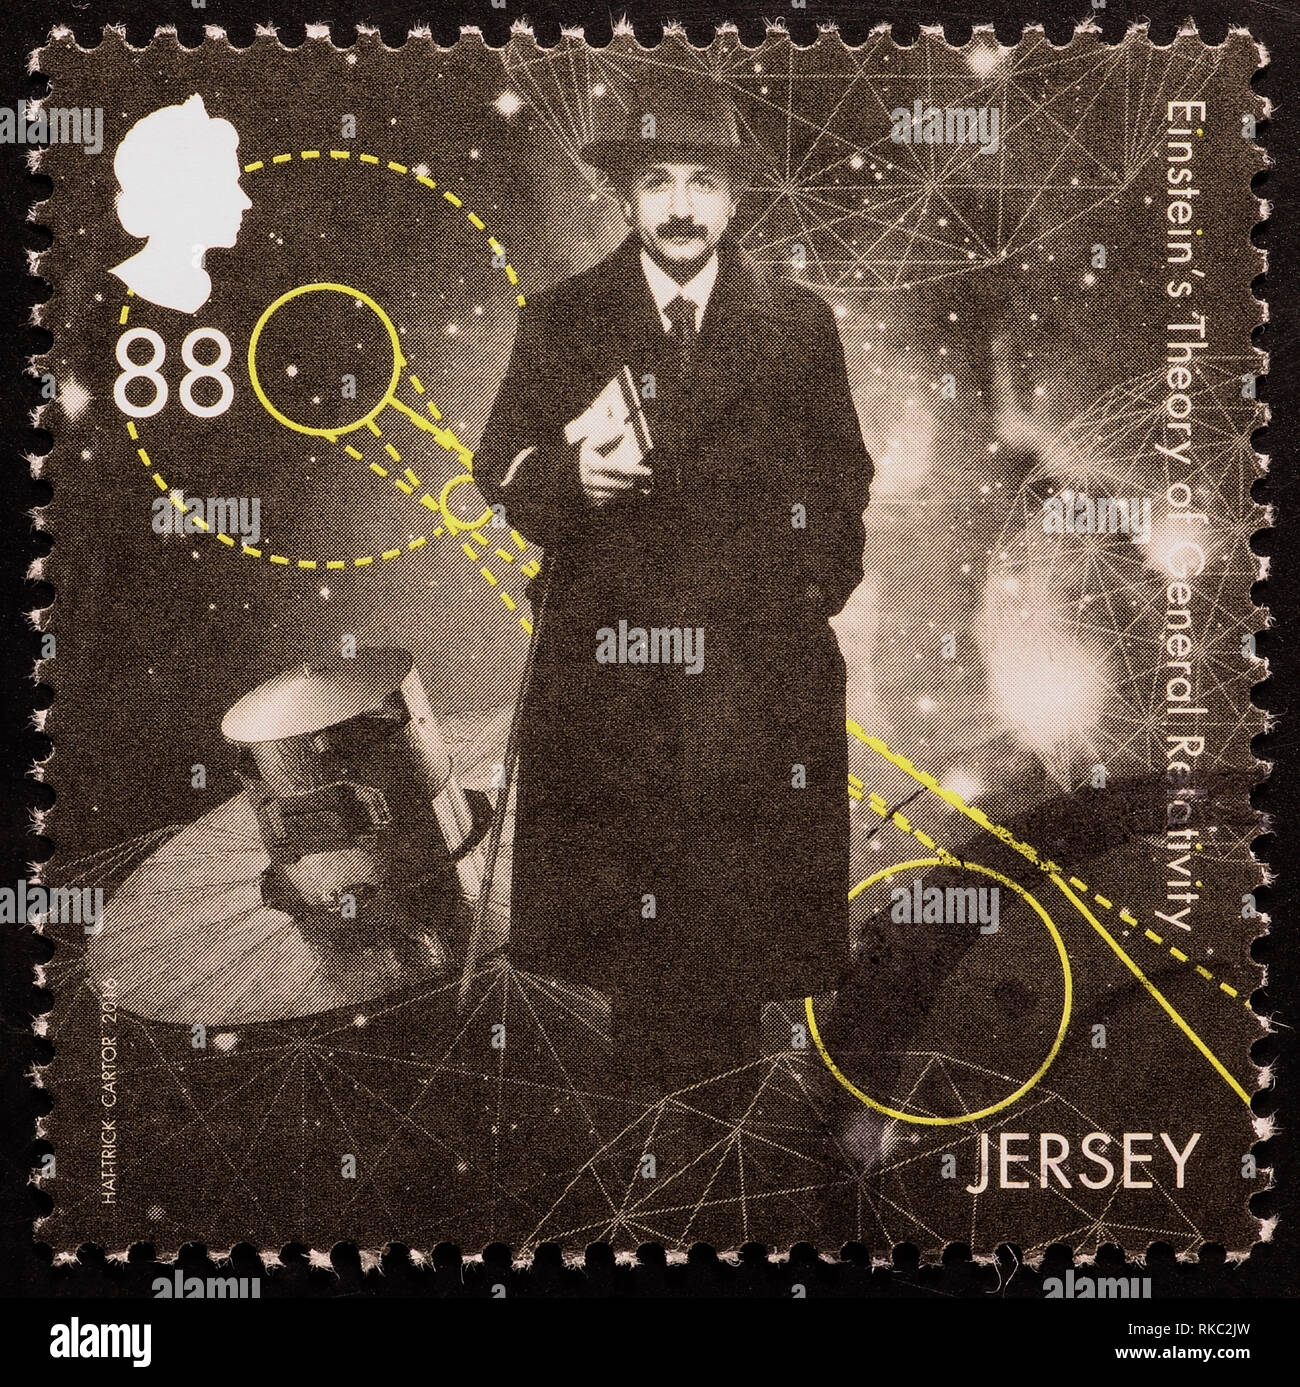 Wissenschaftler Albert Einstein auf Briefmarke von Jersey Stockfoto